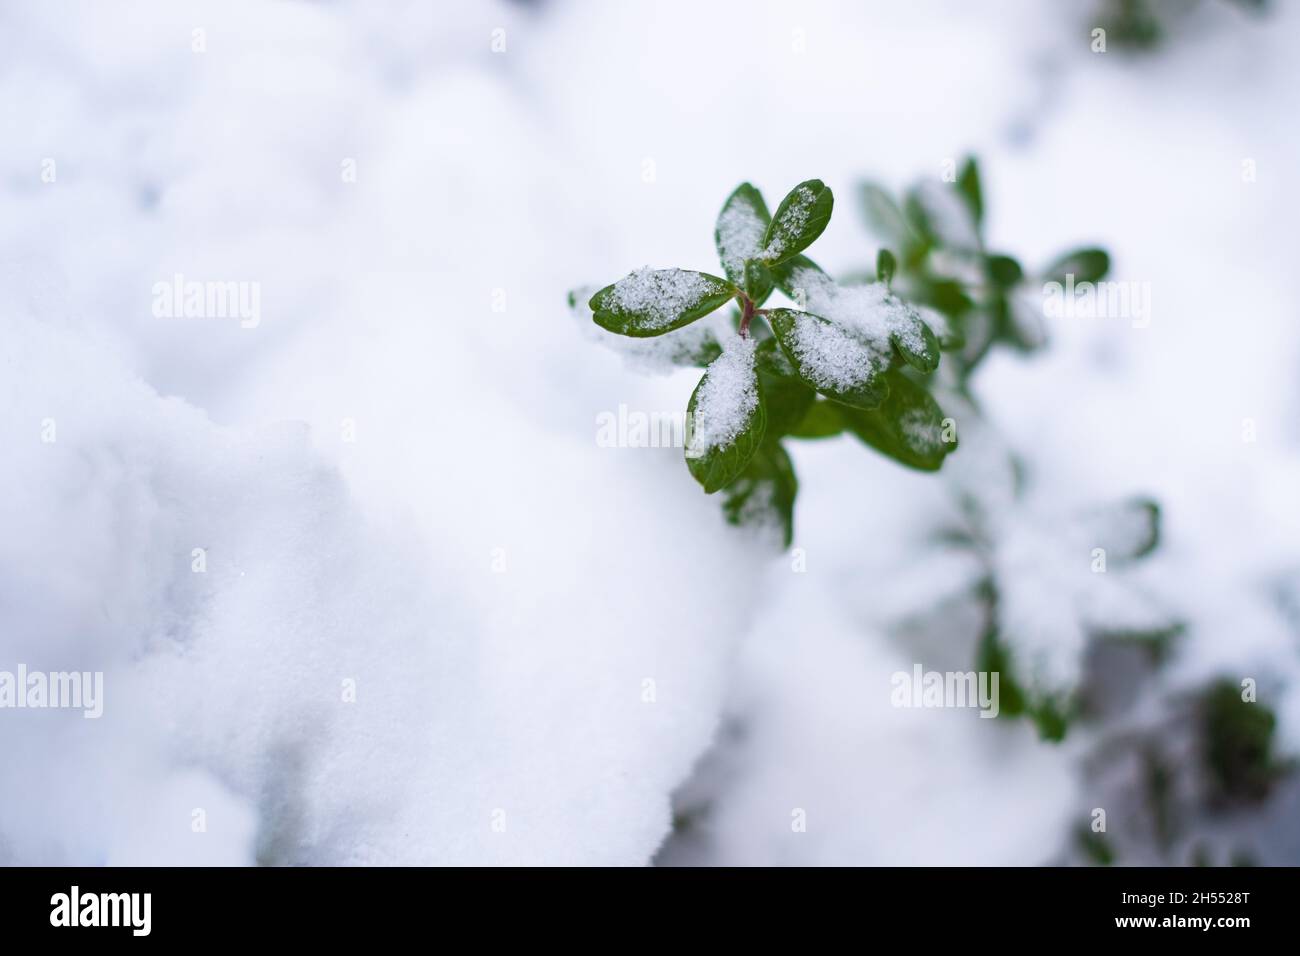 Grüne Preiselbeerpflanze, die im Schnee wächst. Immergrüne Preiselbeere im Winter. Stockfoto